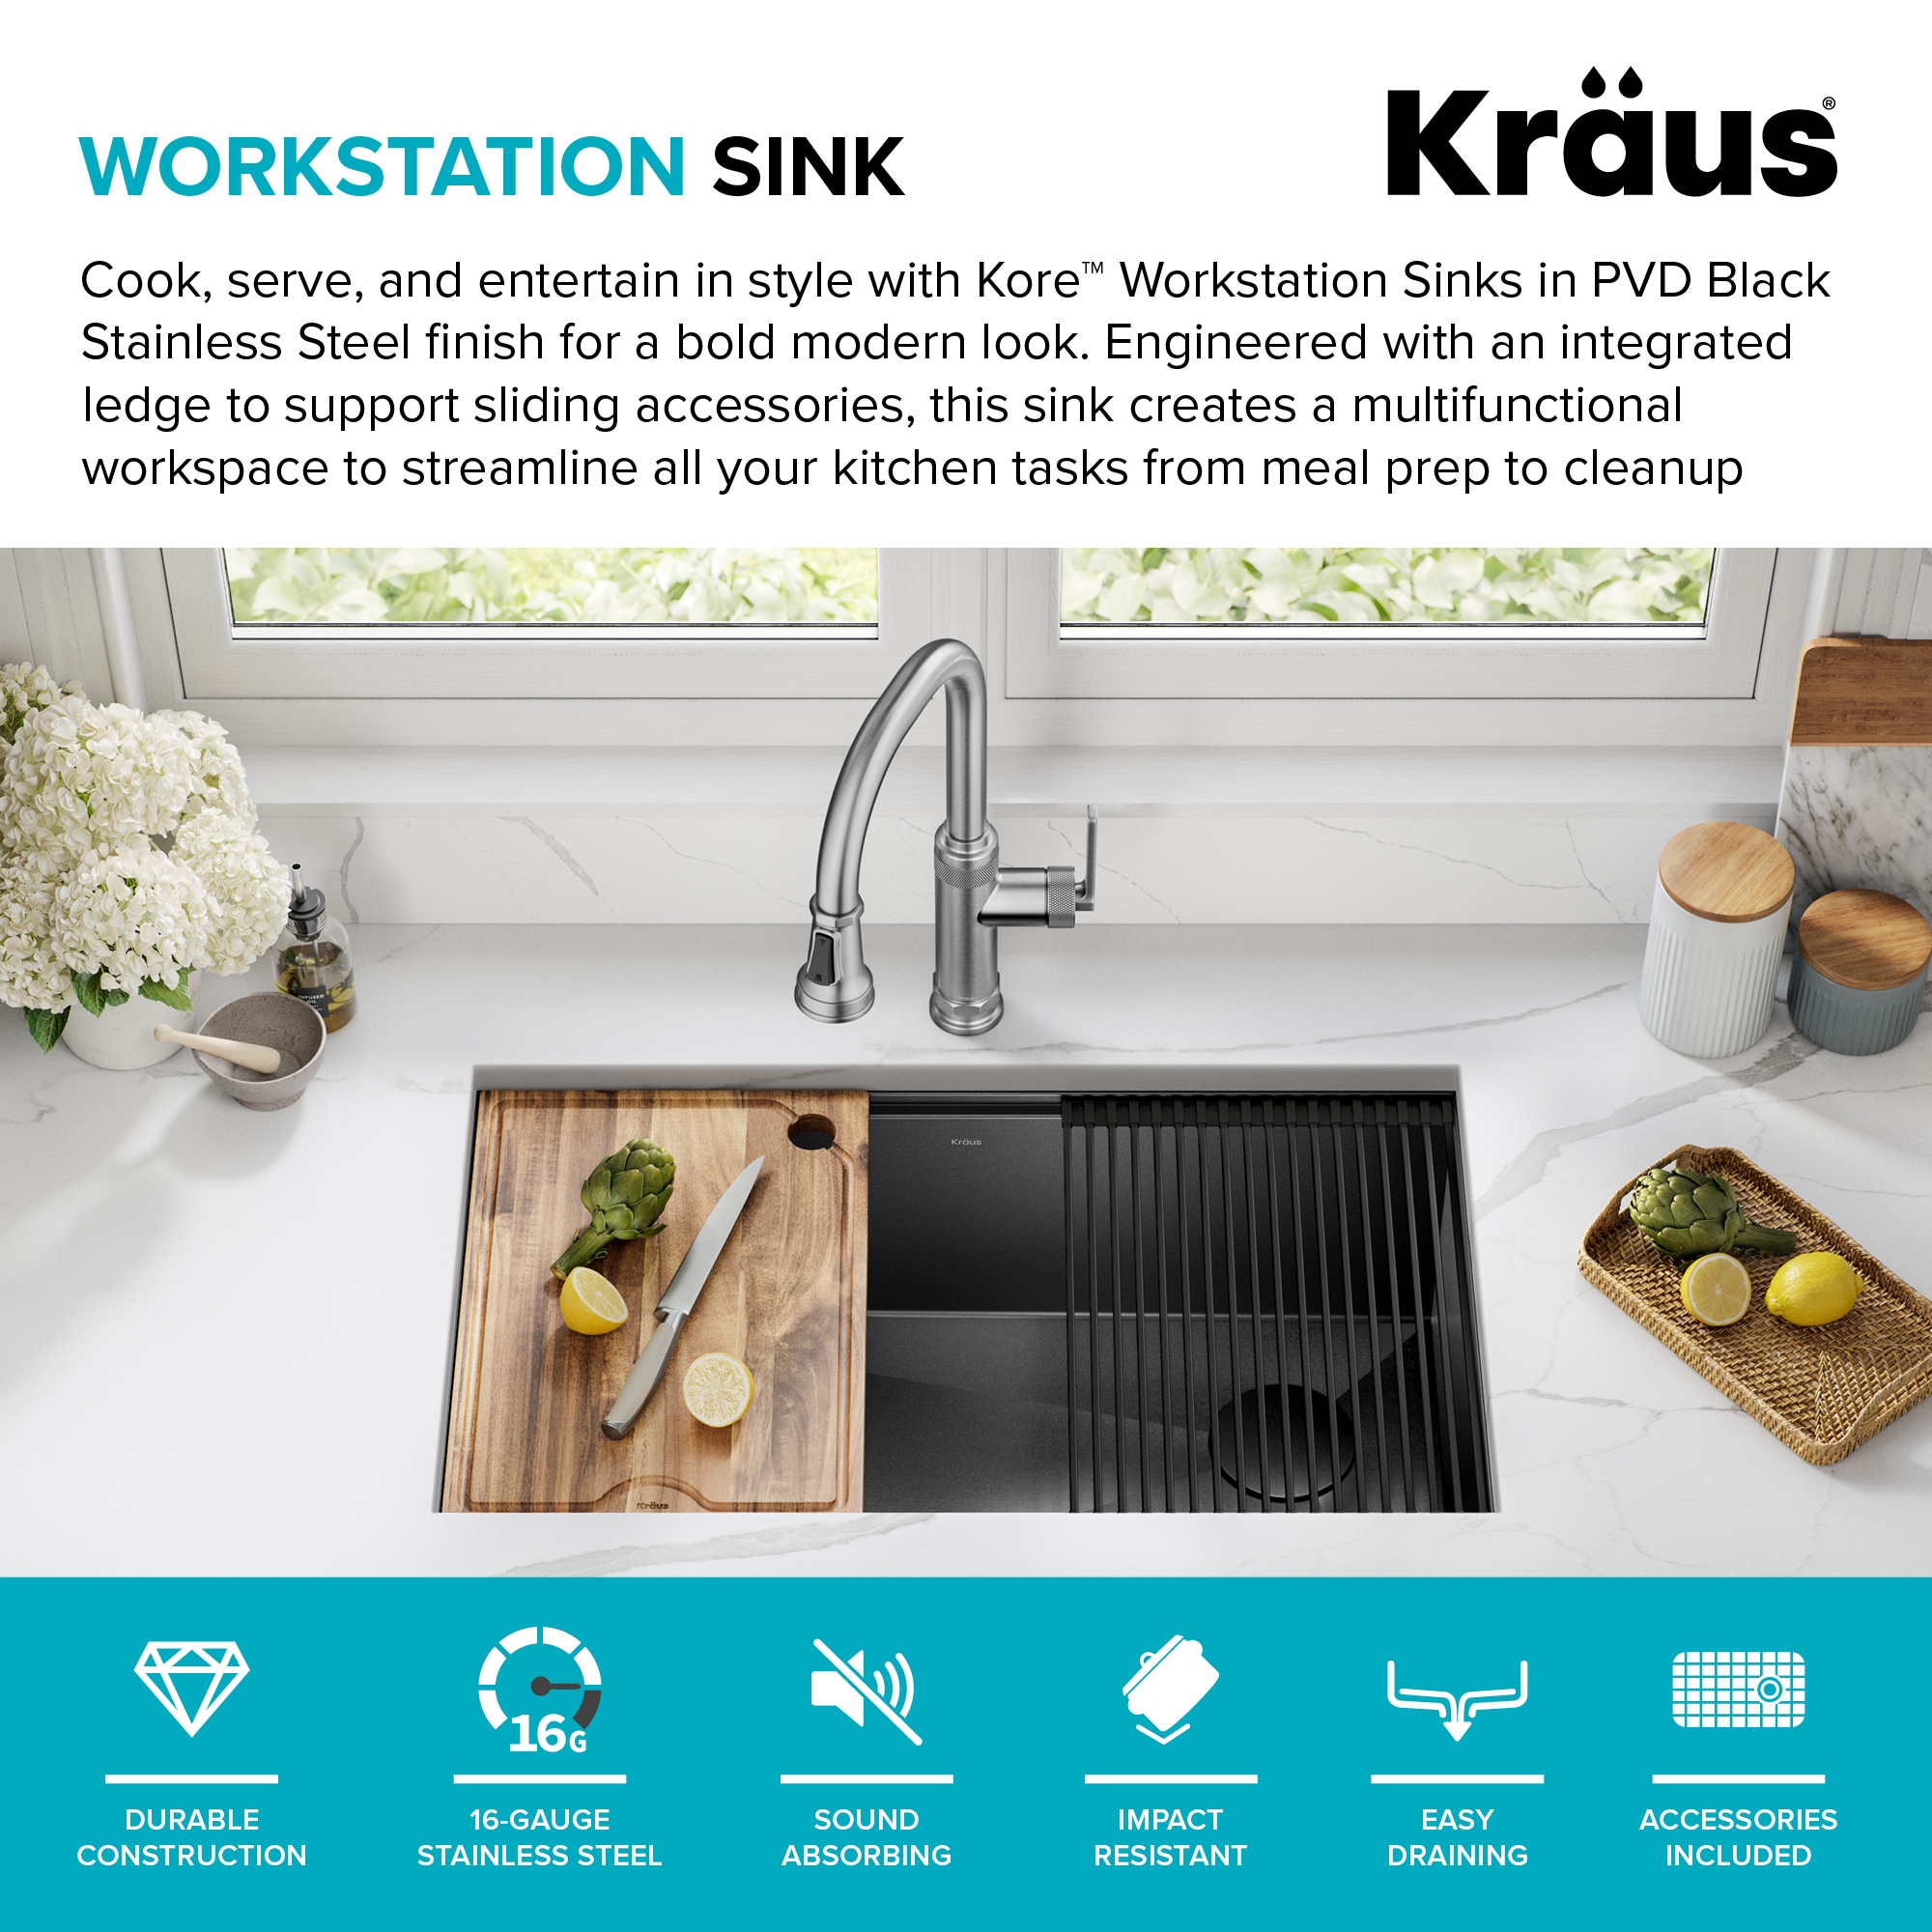 Kraus KWU110-36 Workstation Kitchen Sink With Accessories